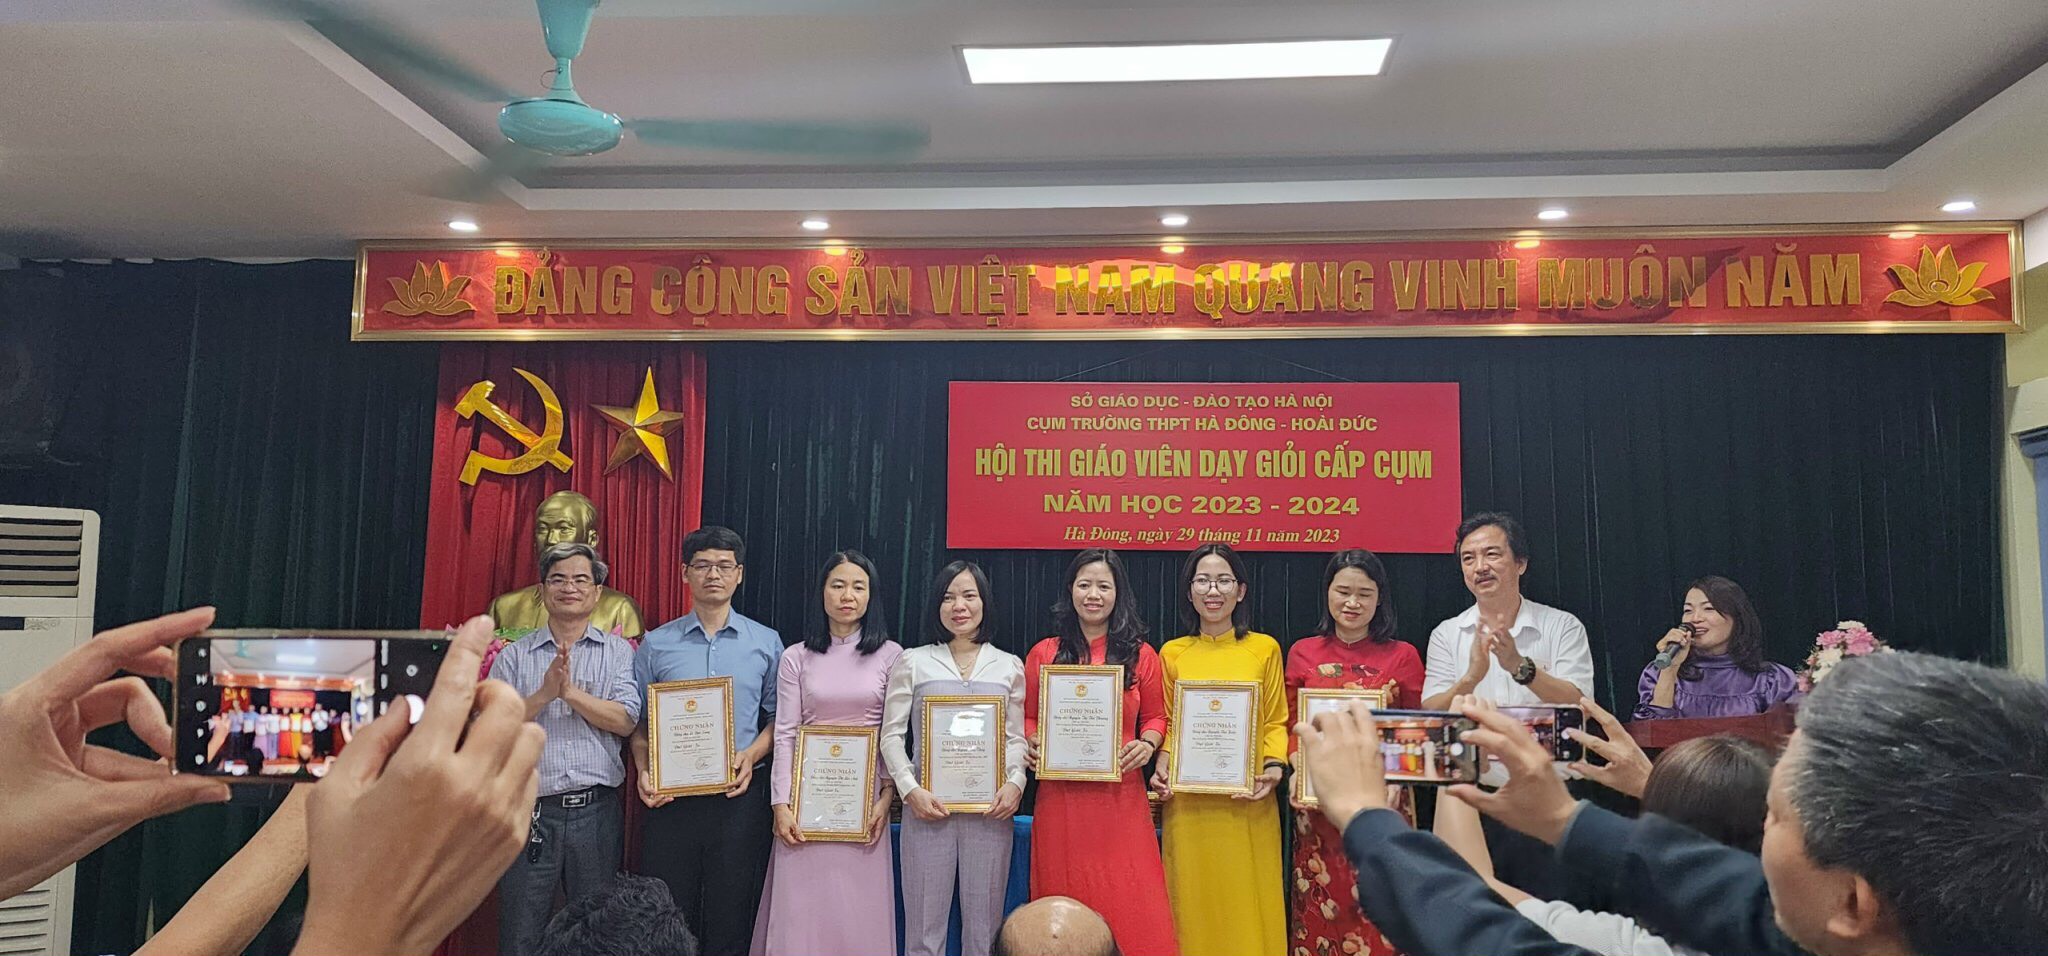 Cô Nguyễn Thu Hiền vinh dự nhận giải Ba của cuộc thi